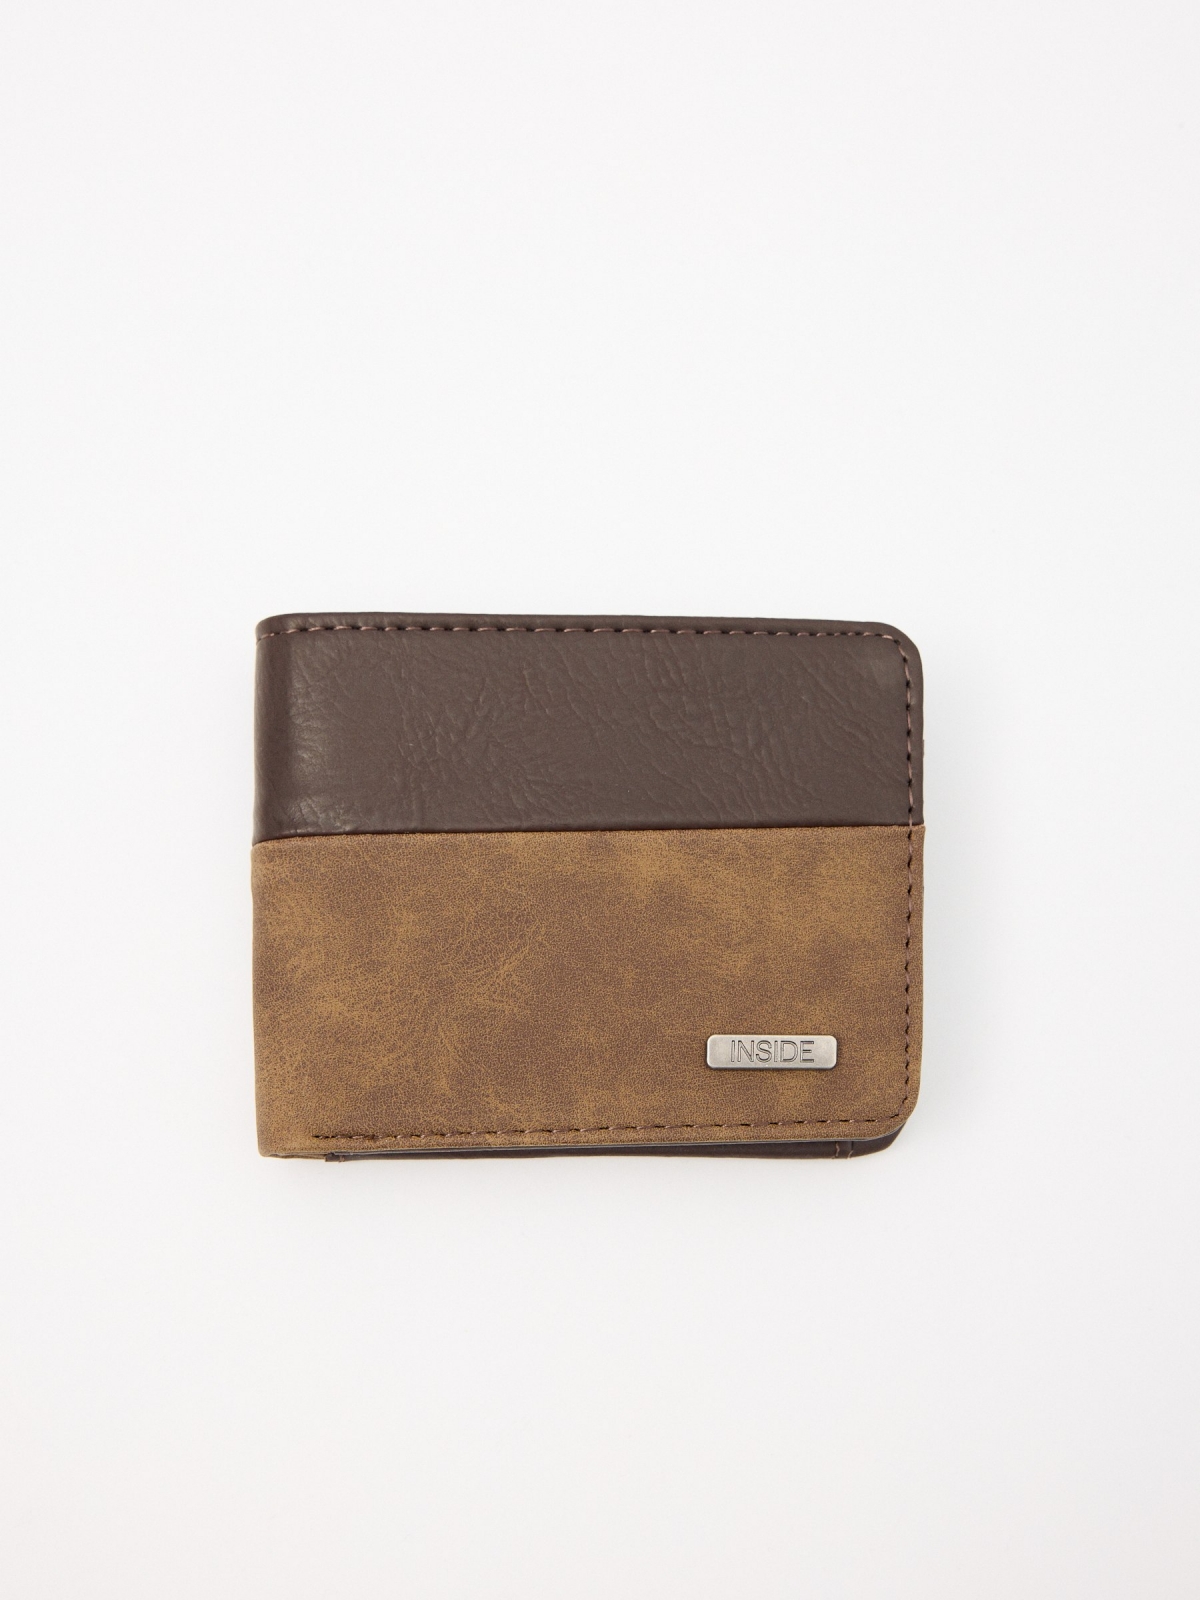 INSIDE men's leatherette wallet brown